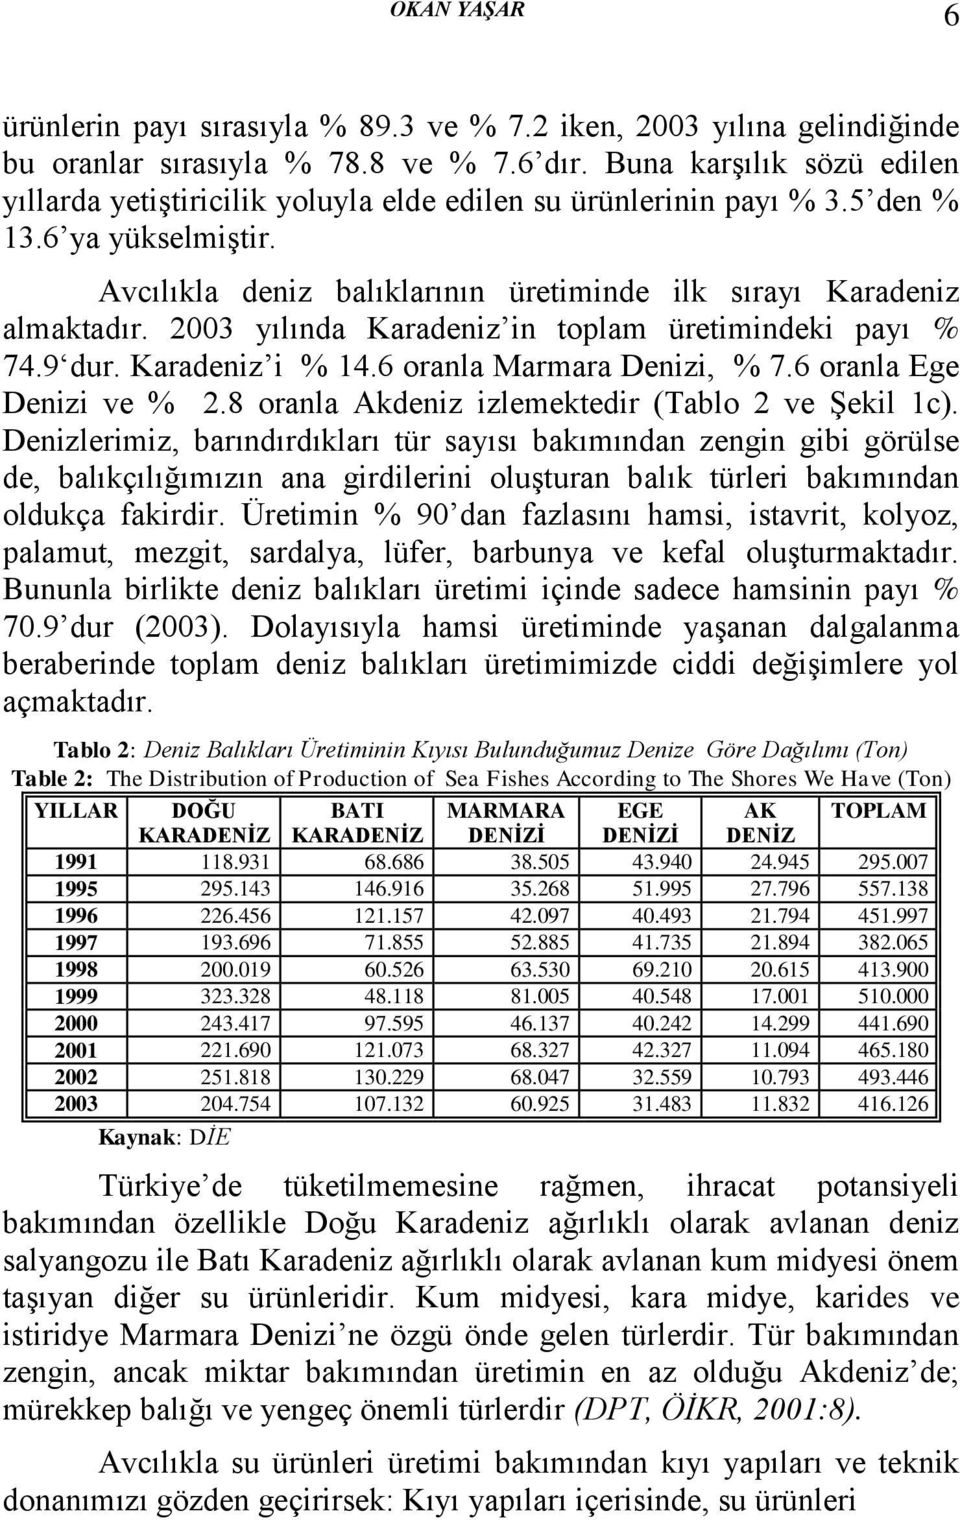 2003 yılında Karadeniz in toplam üretimindeki payı % 74.9 dur. Karadeniz i % 14.6 oranla Marmara Denizi, % 7.6 oranla Ege Denizi ve % 2.8 oranla Akdeniz izlemektedir (Tablo 2 ve Şekil 1c).